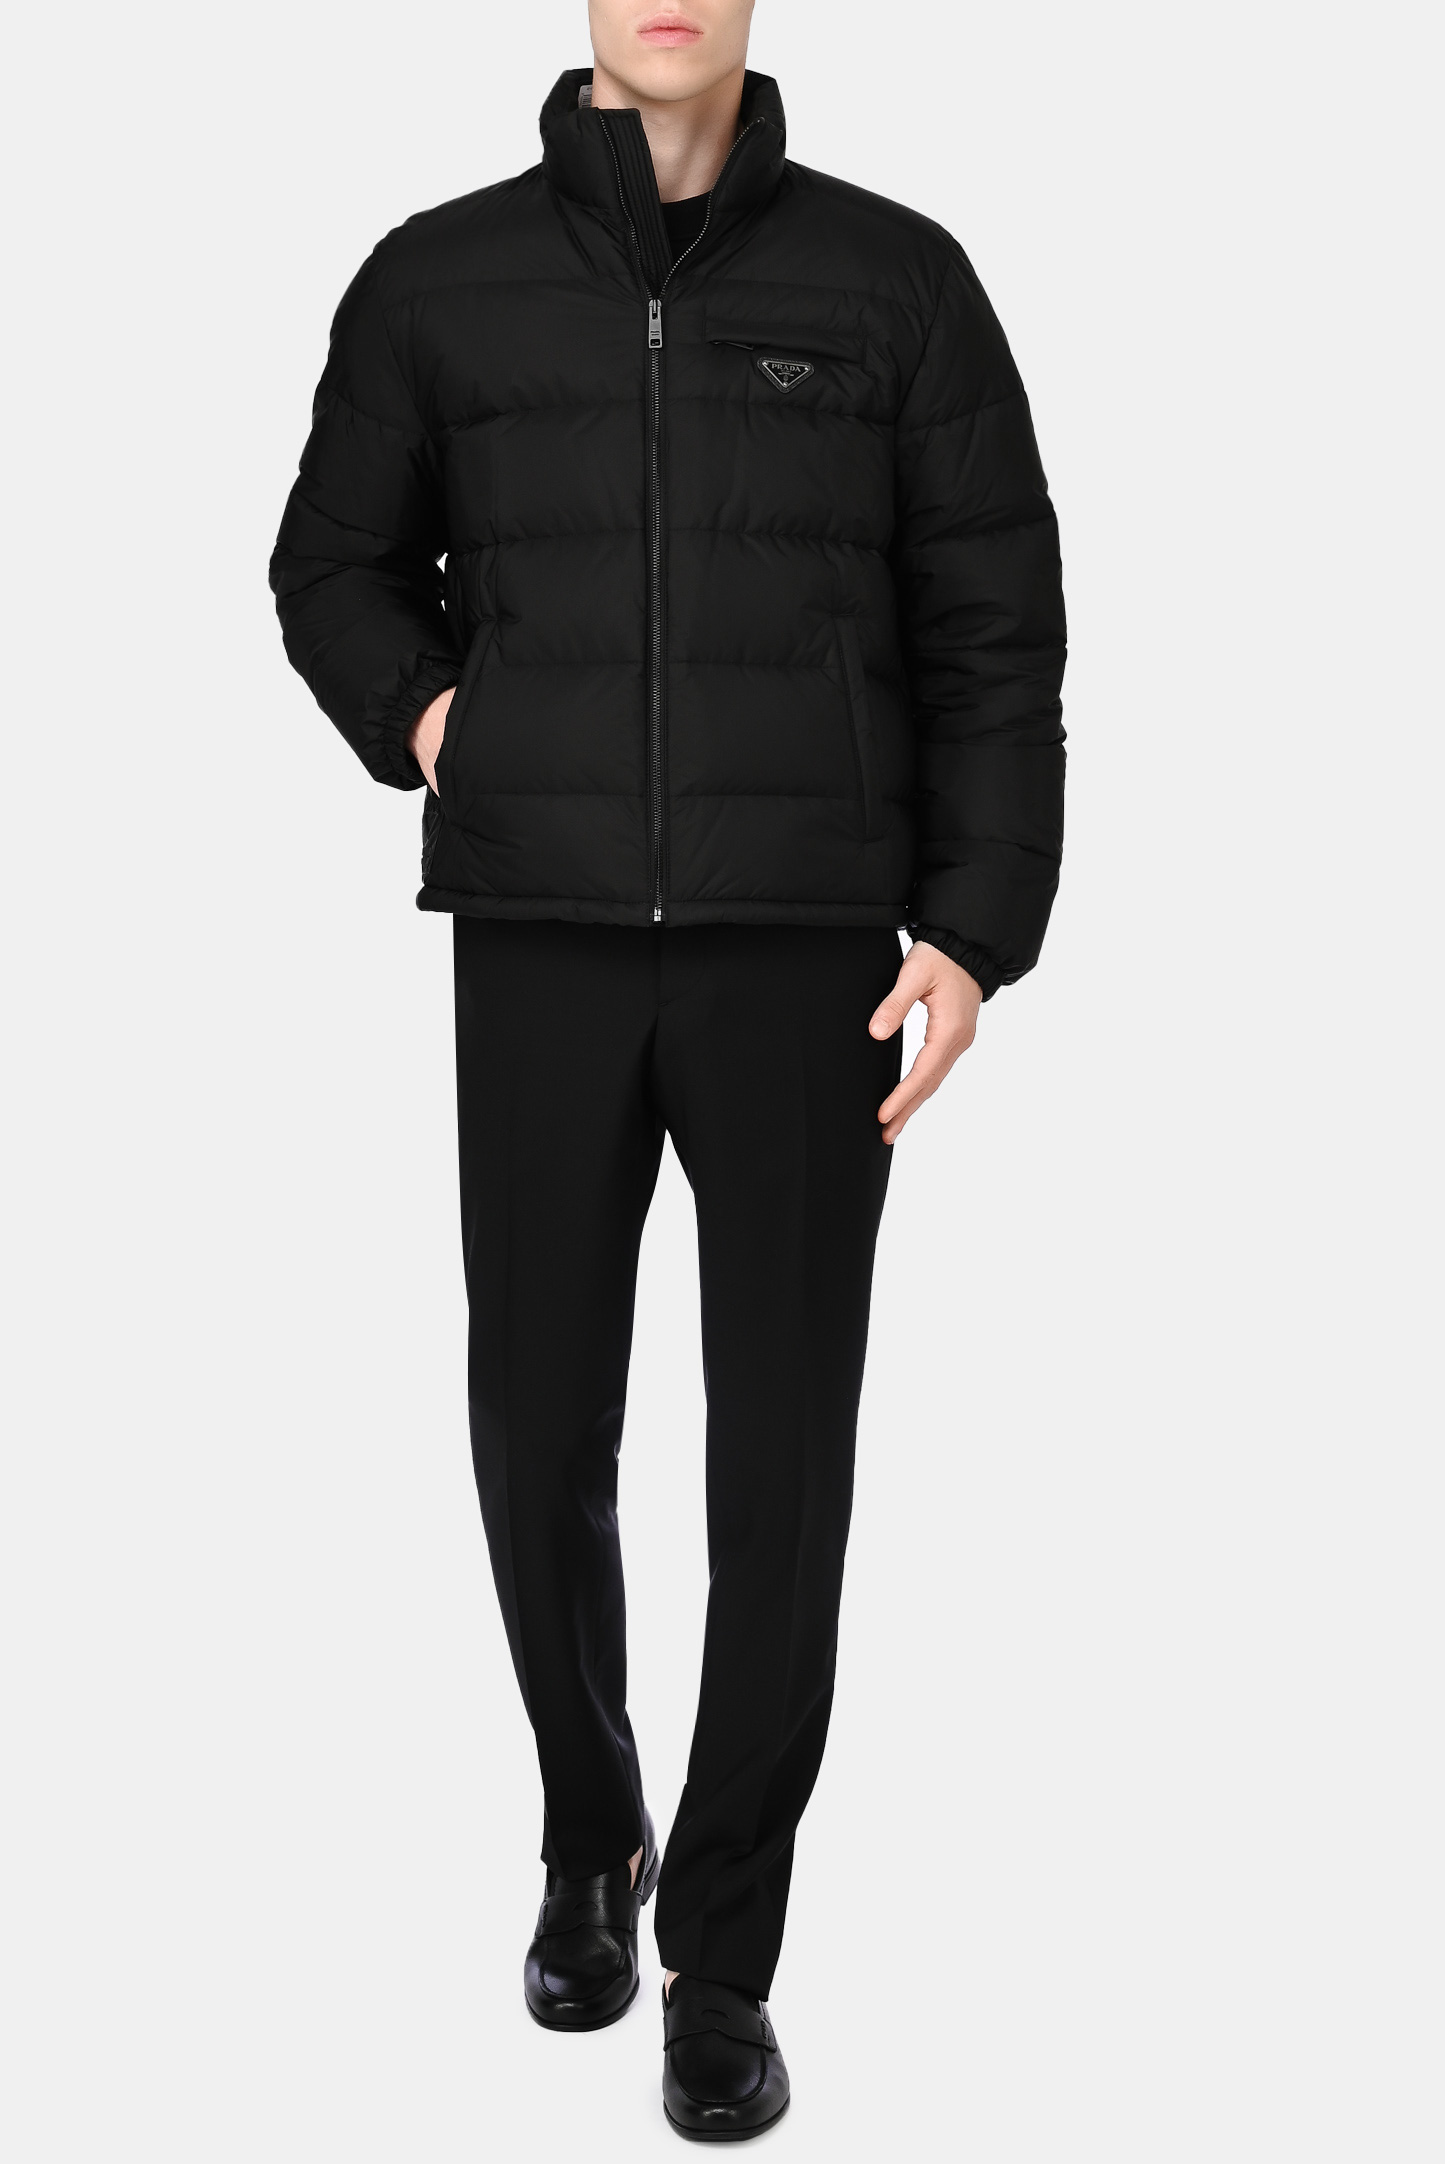 Куртка PRADA SGB702 S 202, цвет: Черный, Мужской